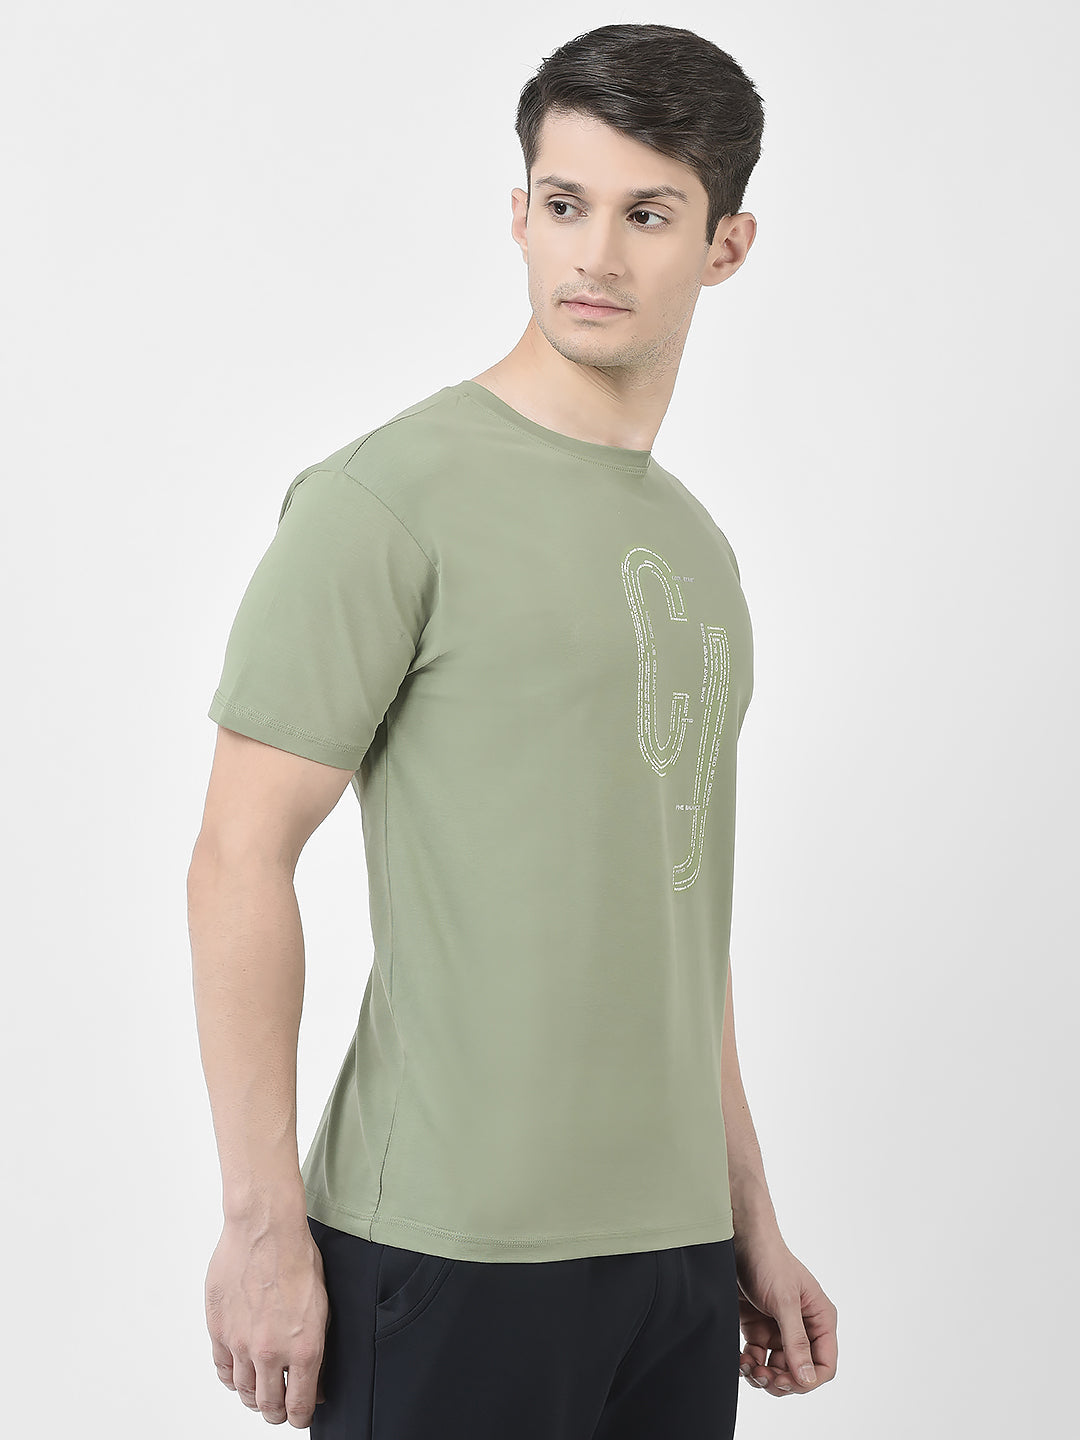  CJ Fern Green T-Shirt